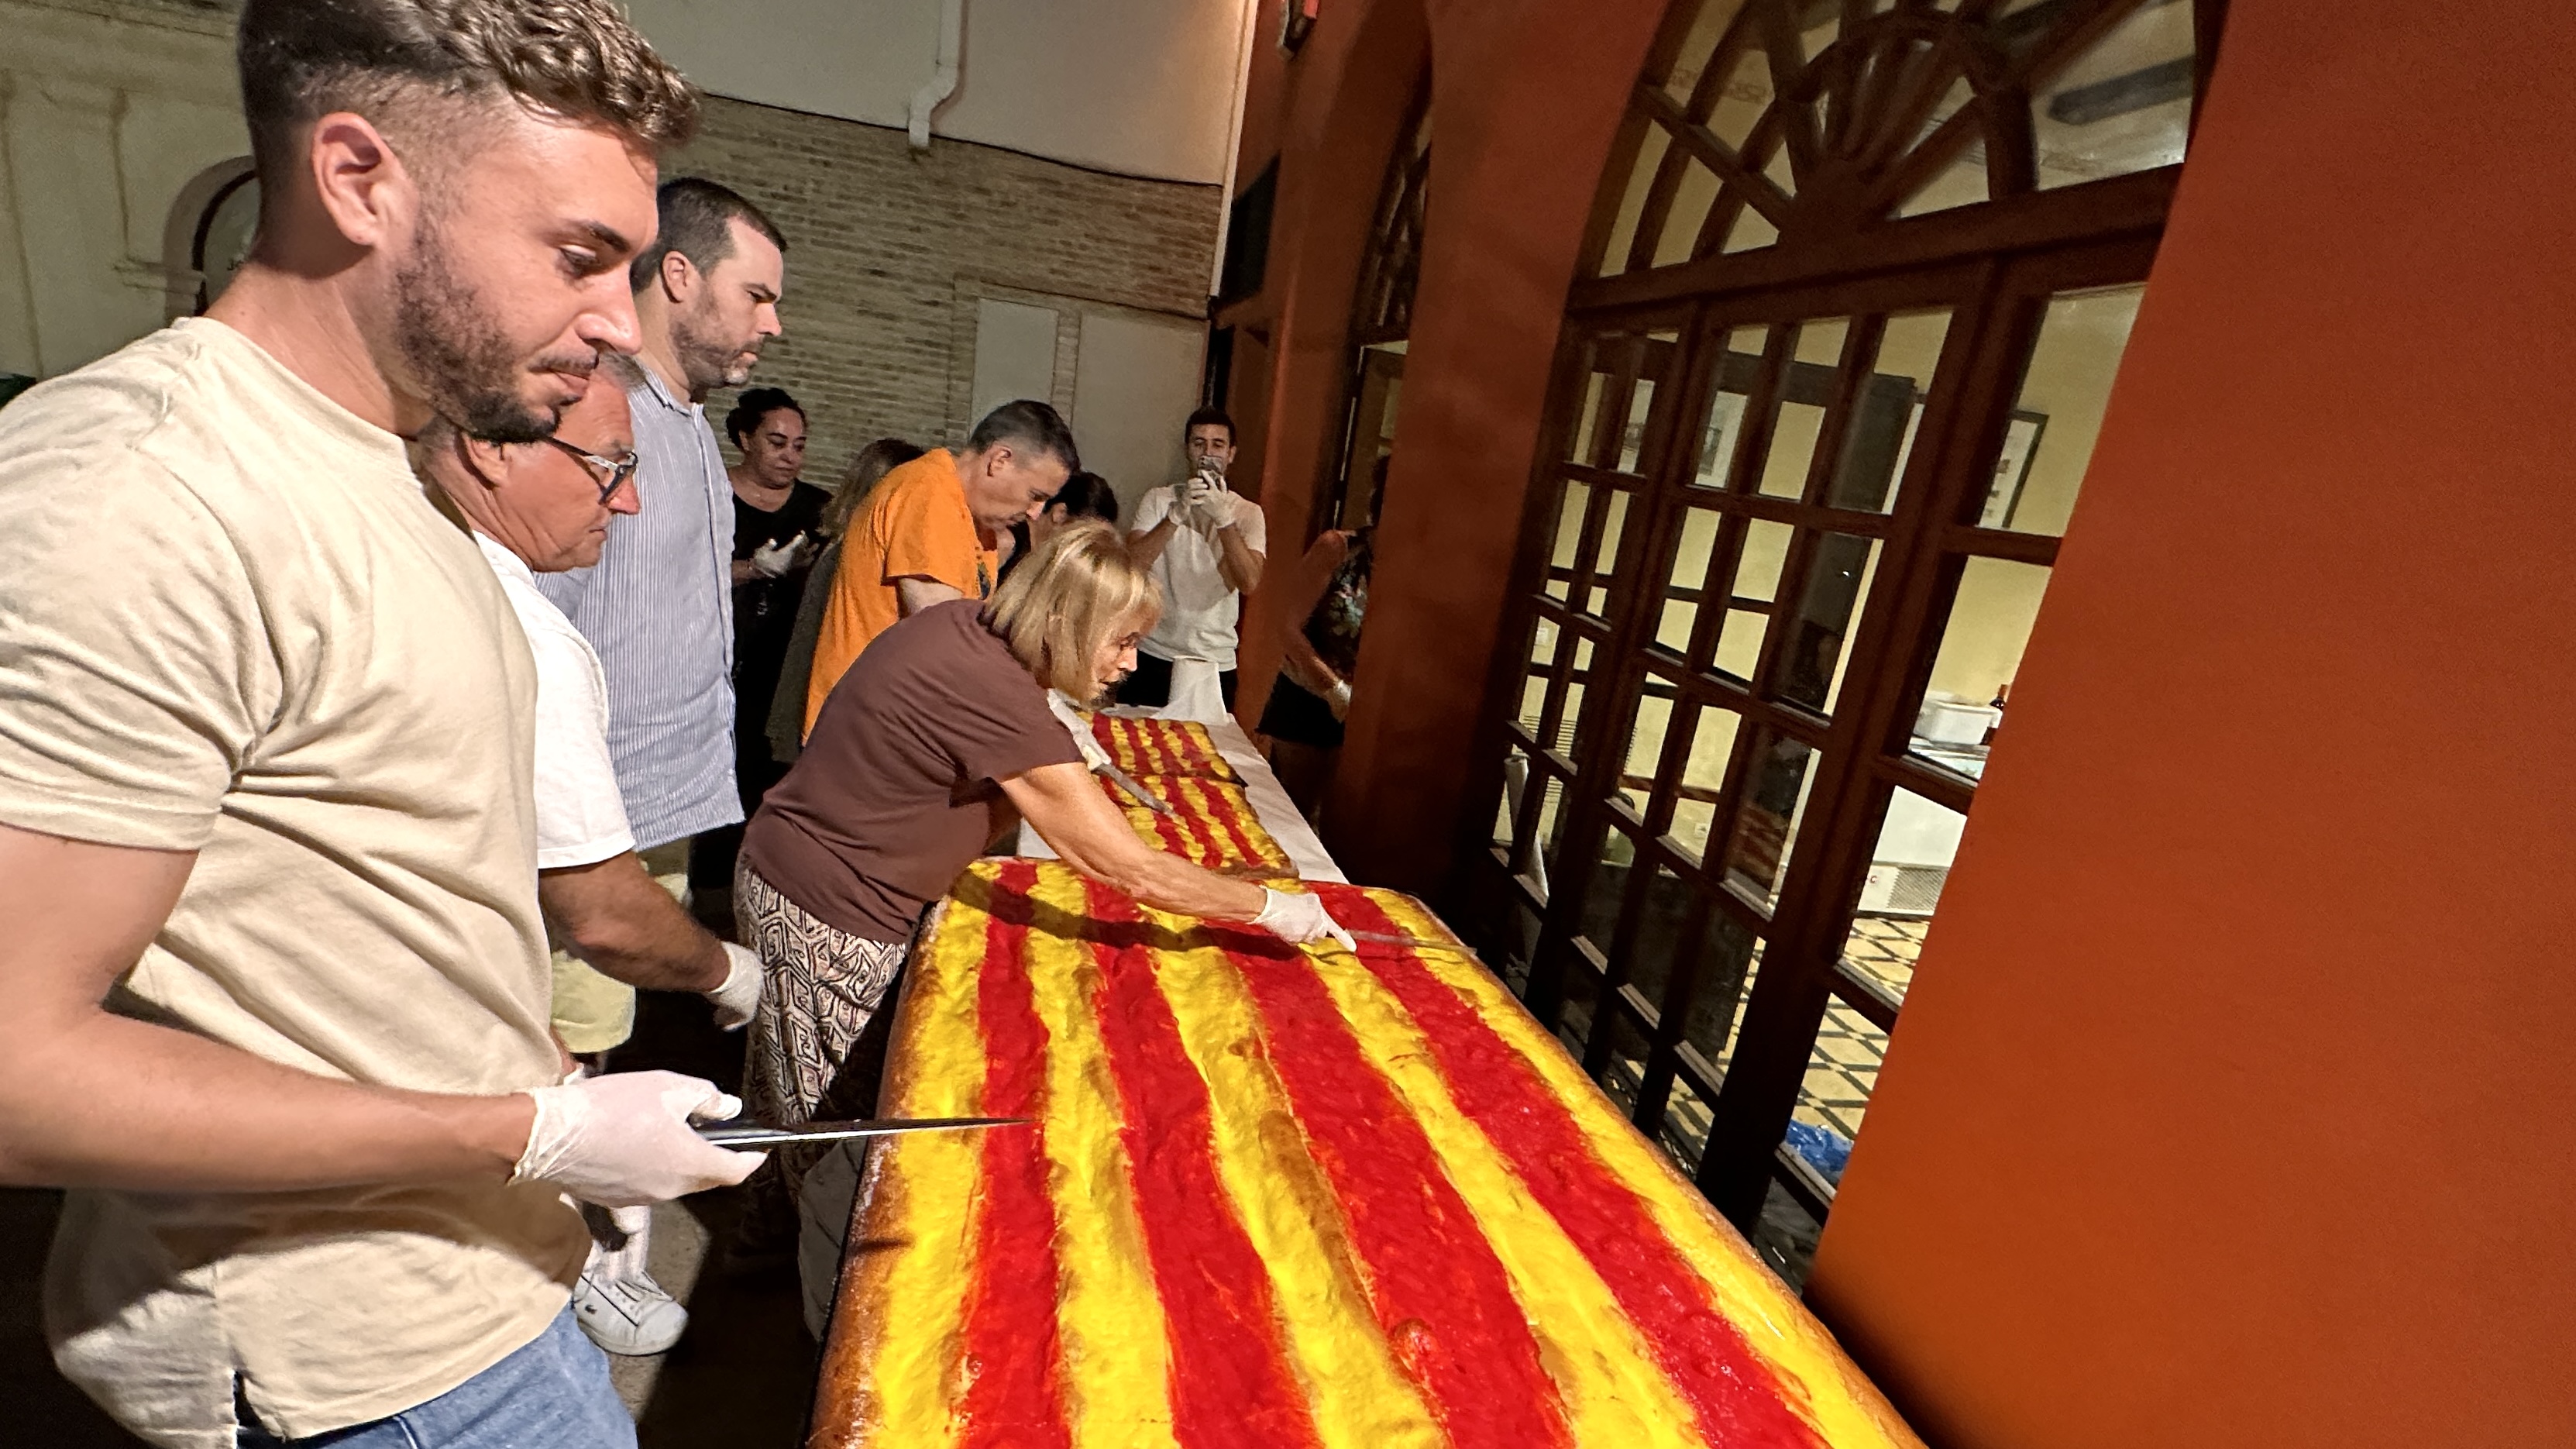 Diada Nacional de Catalunya 2023